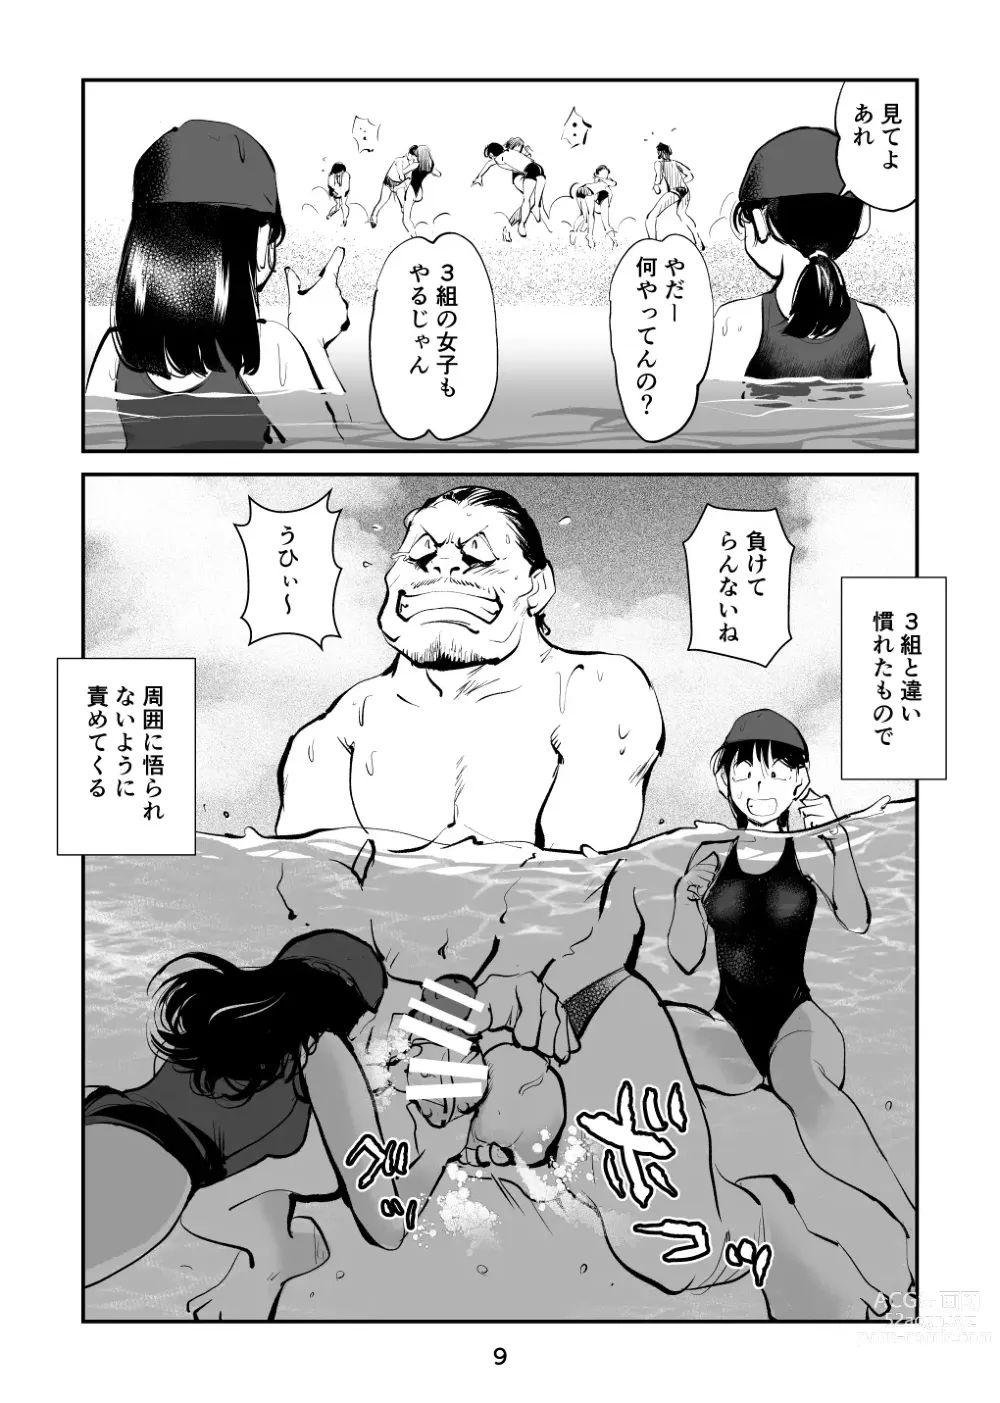 Page 9 of doujinshi Chinpo Shiikukakari 7